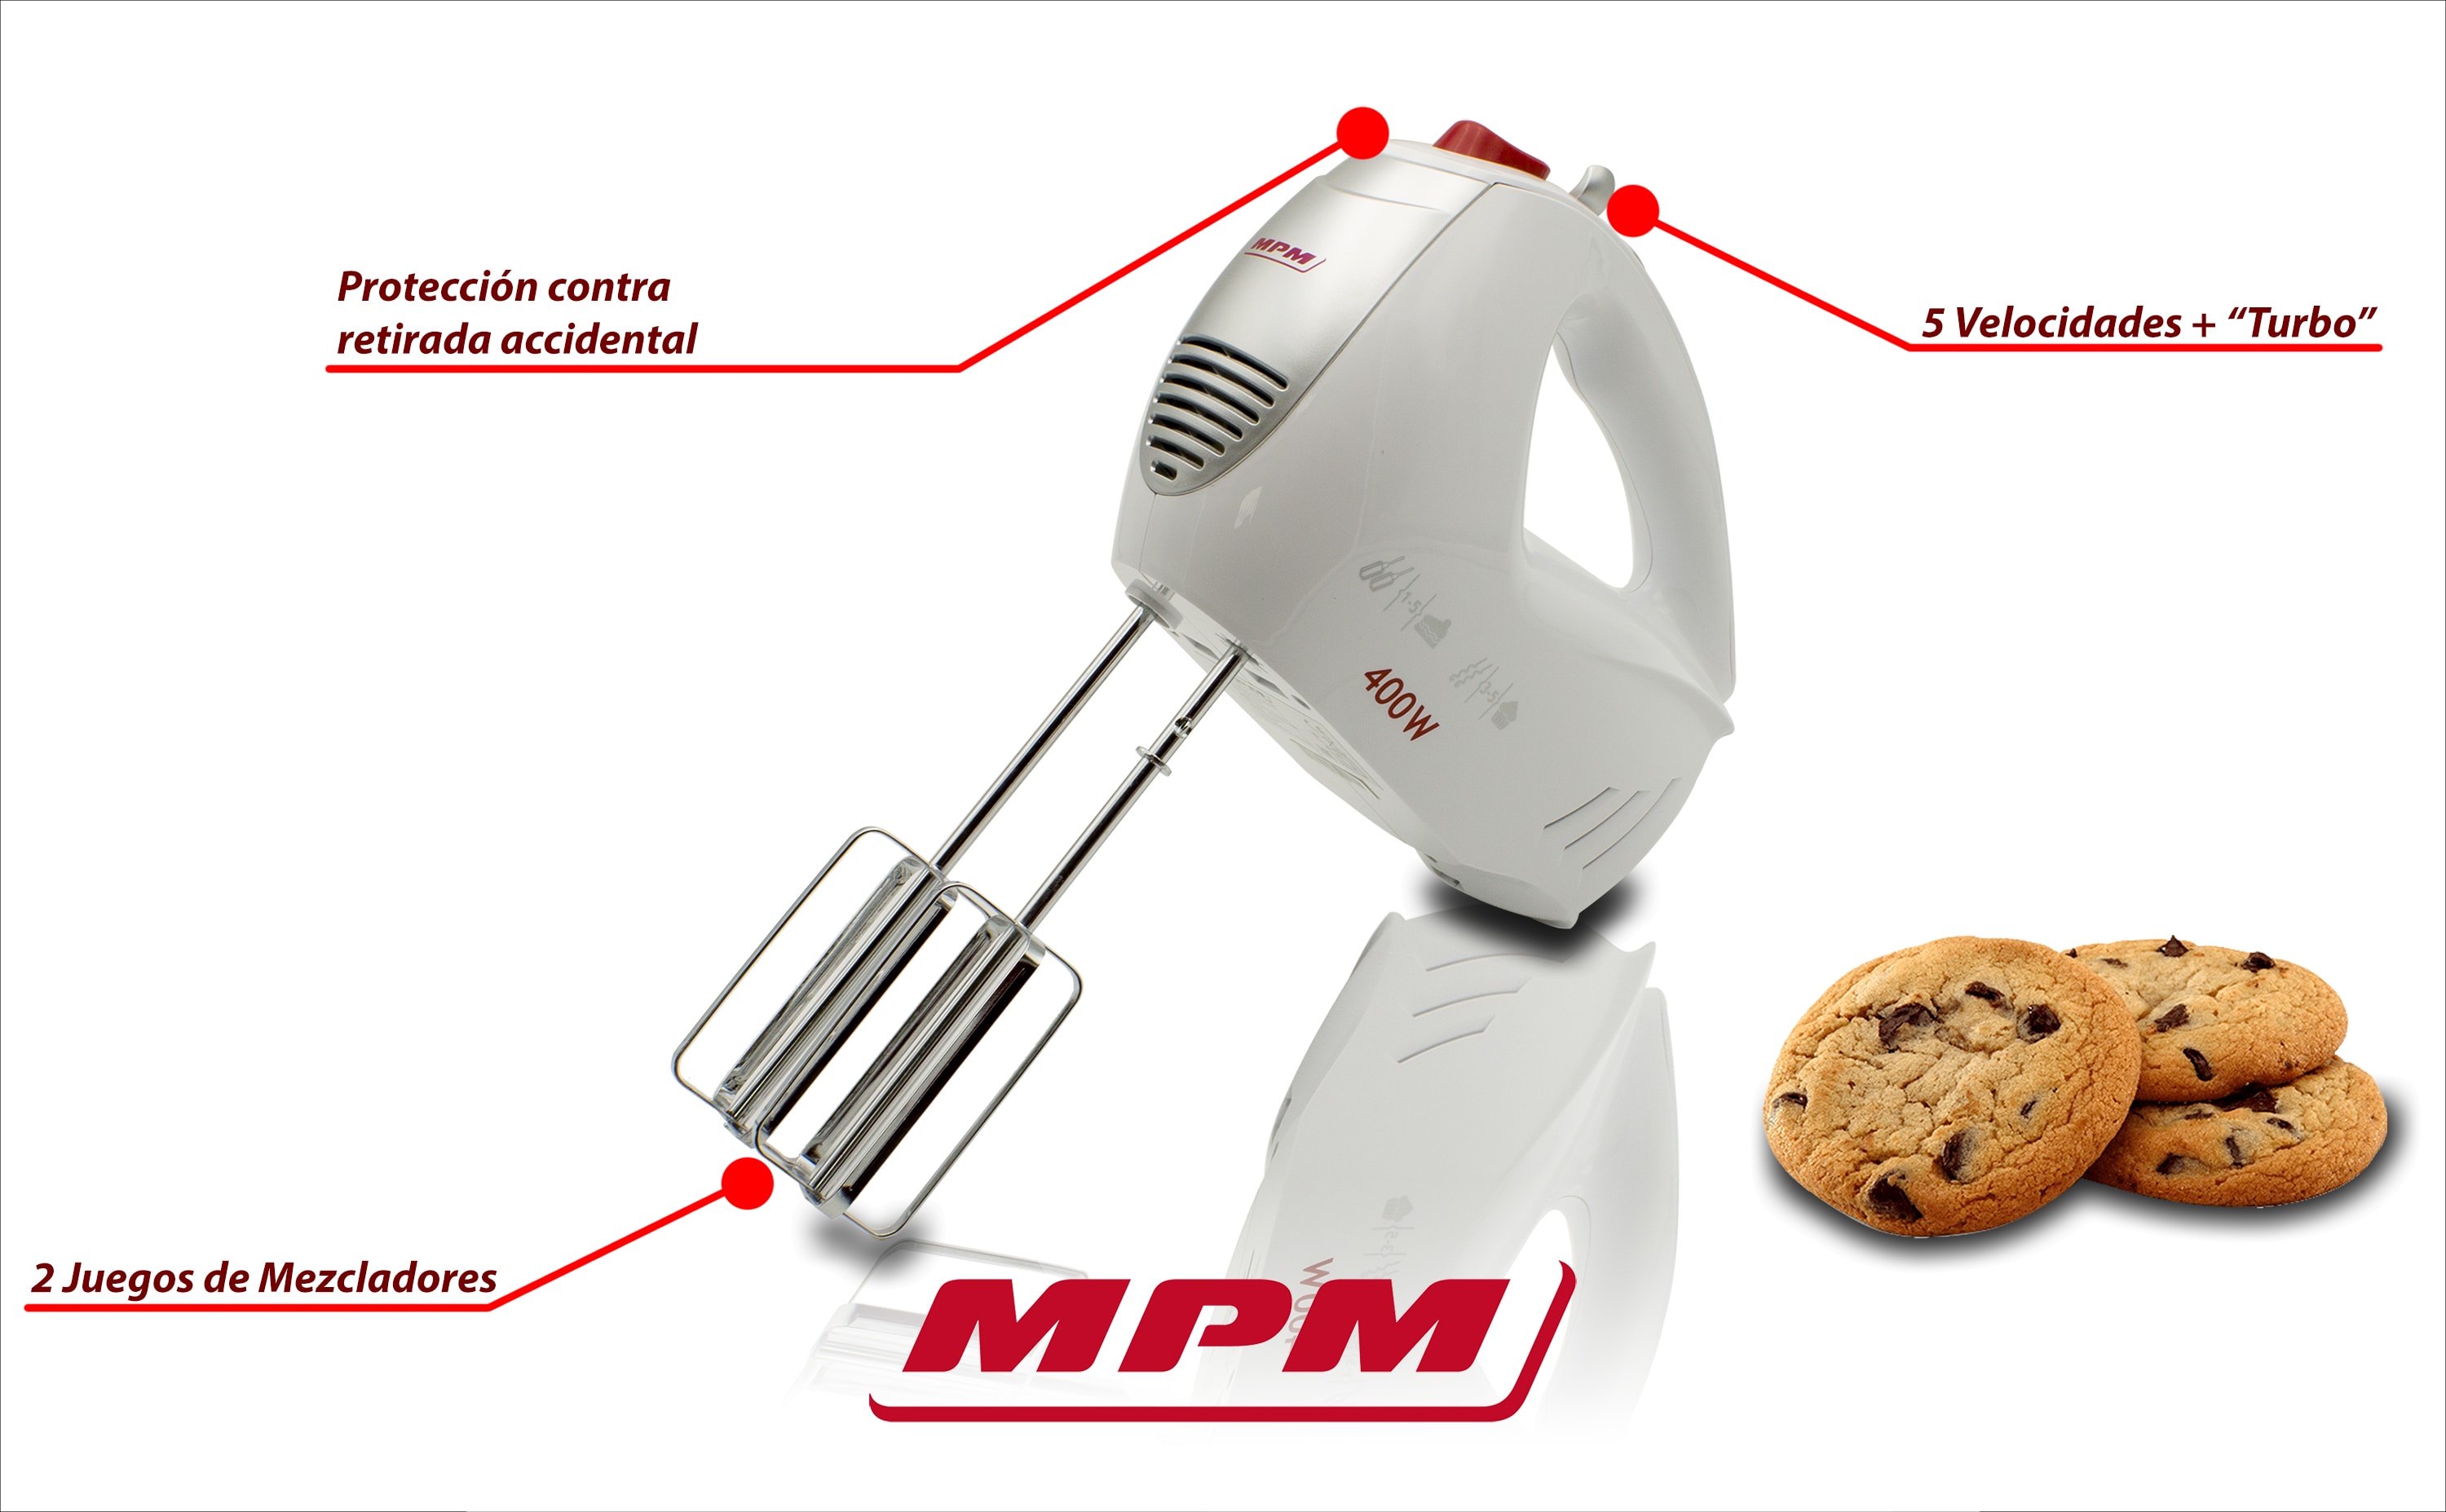 MPM MMR-15 Batidora Amasadora repostería de mano, 5 velocidades + turbo,  varillas y gancho amasar